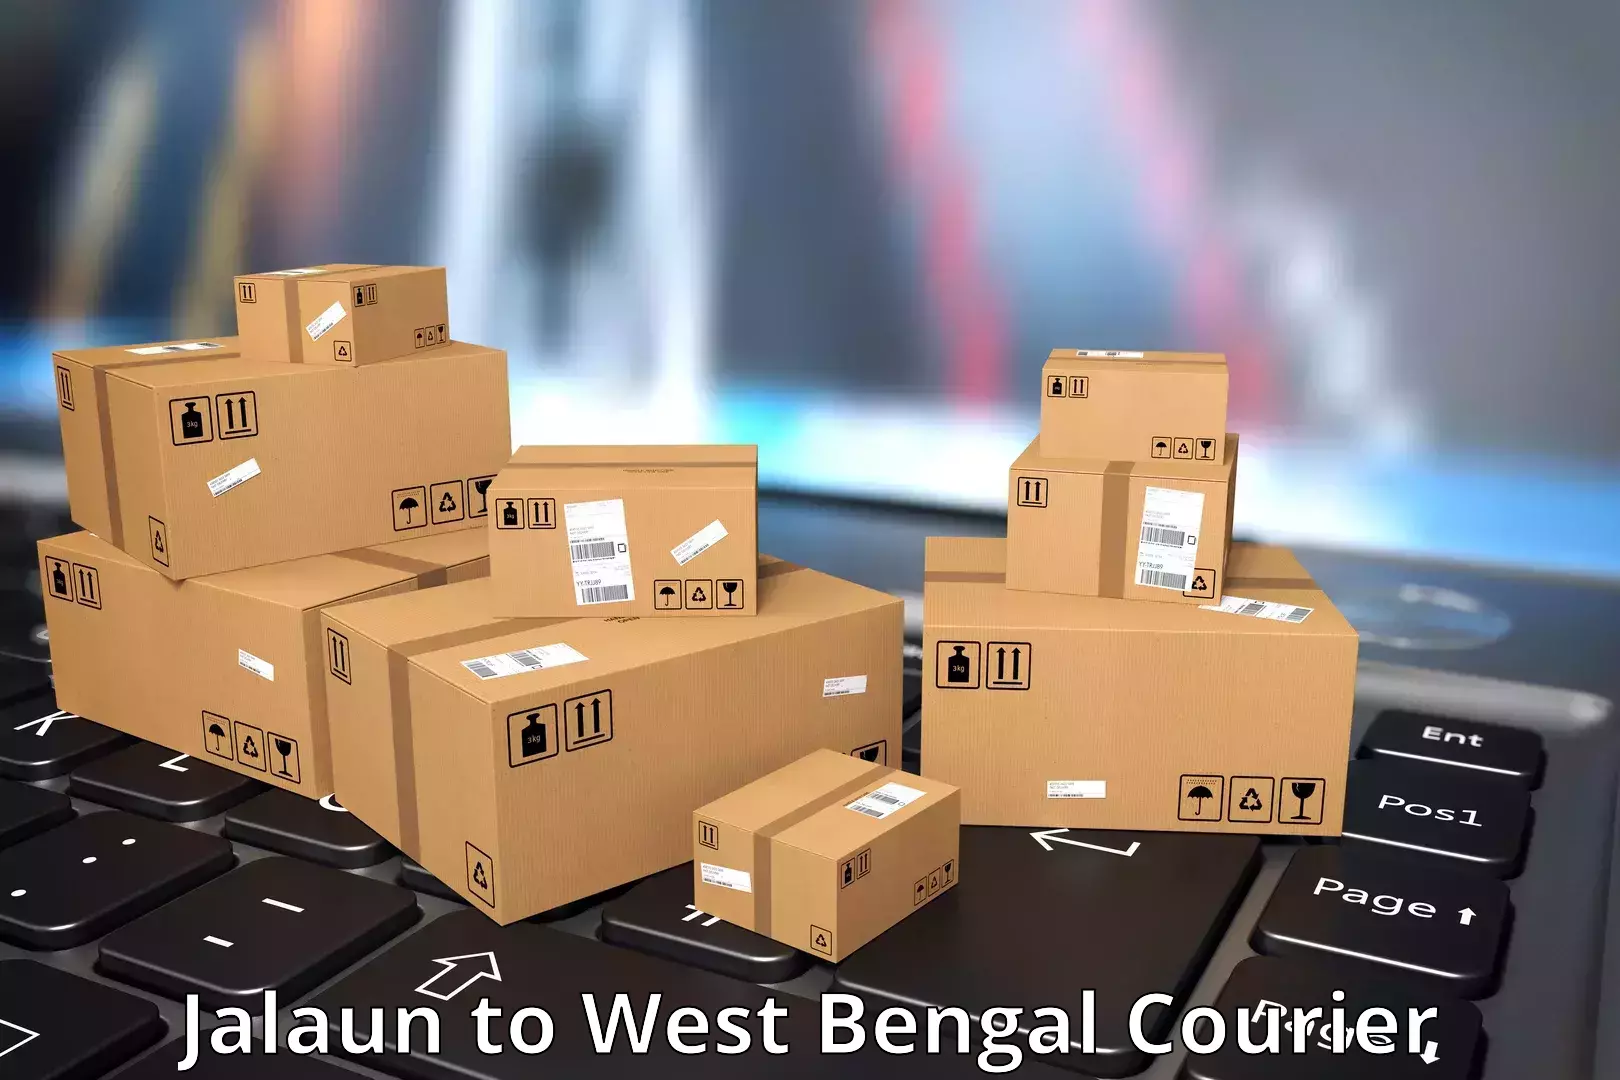 Courier service partnerships Jalaun to Bhadreswar